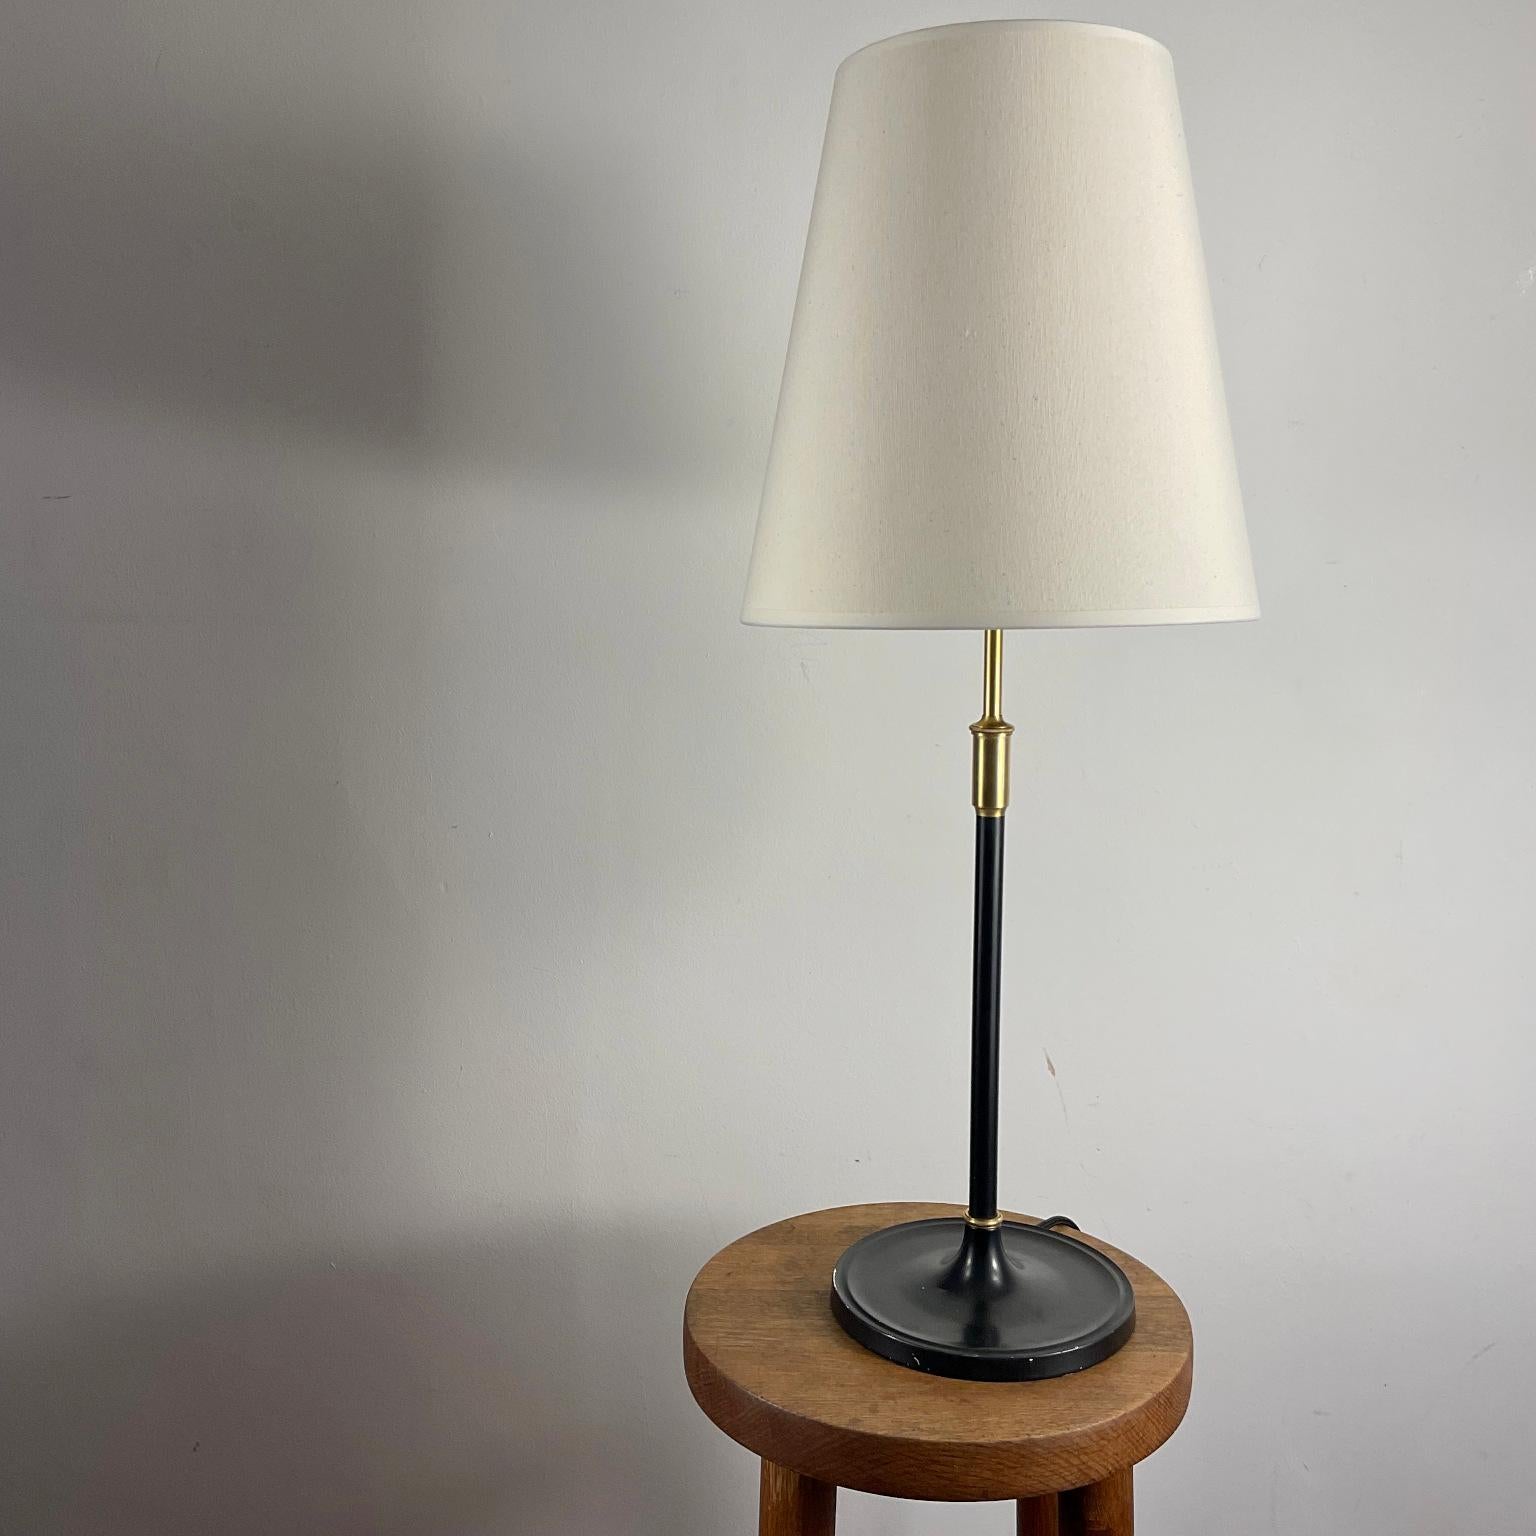 Lampe de table originale, modèle 352, conçue par Aage Petersen pour la société danoise de luminaires 